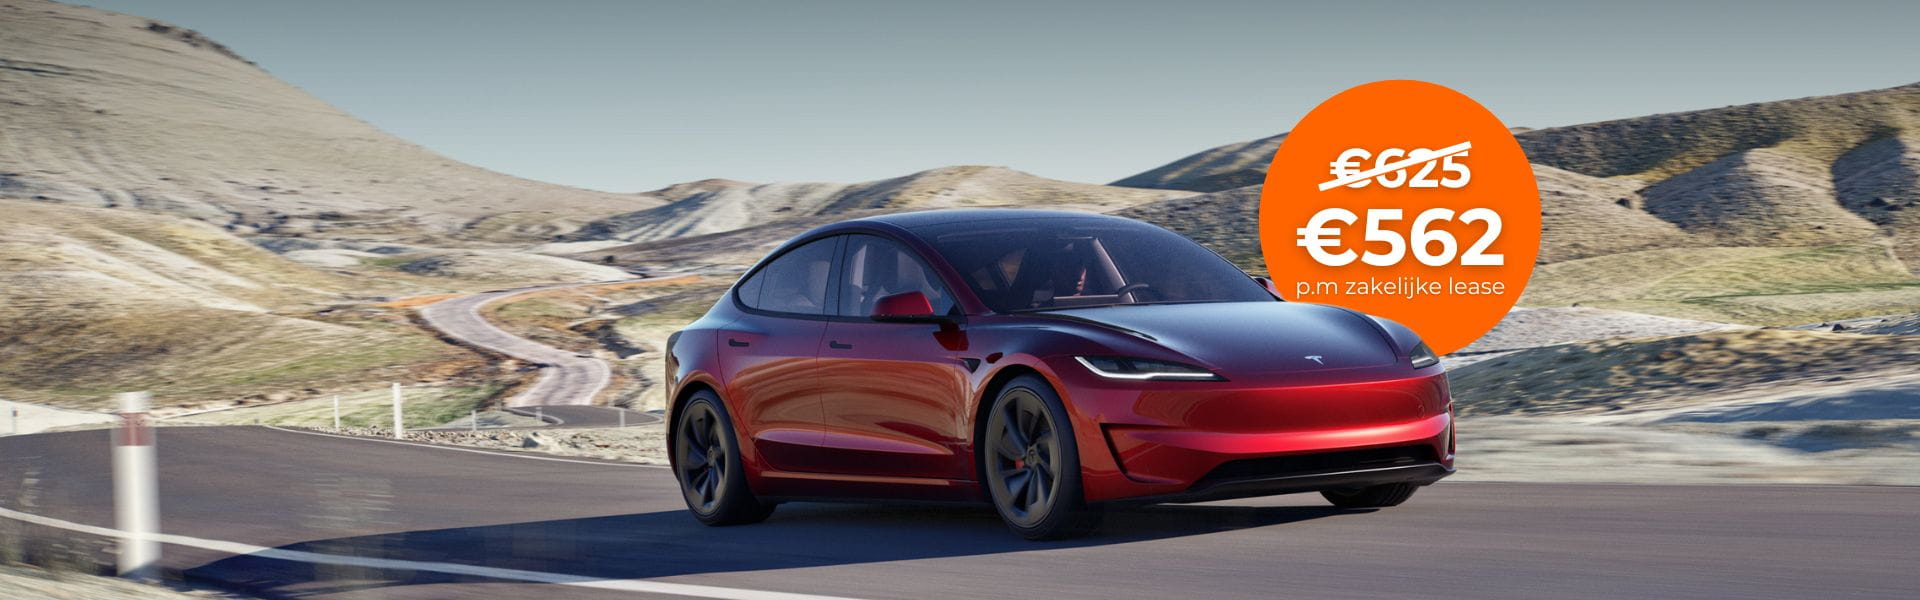 Tesla Model 3 zakelijk leasen